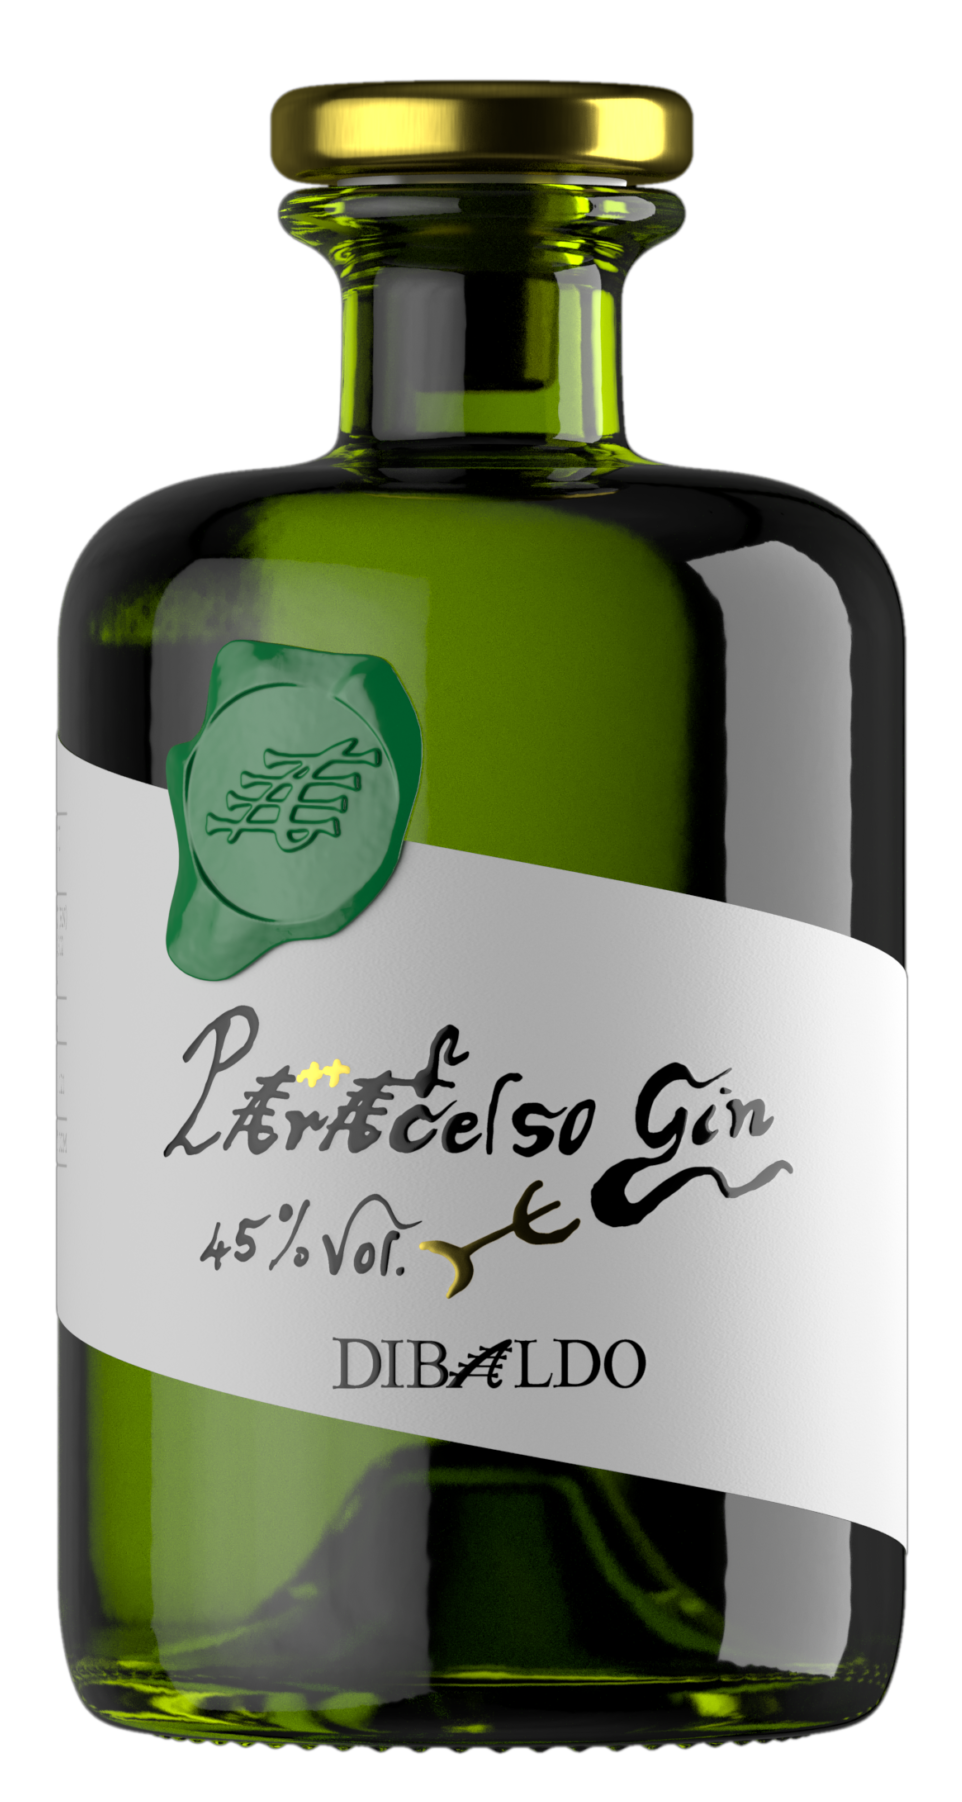 DiBaldo Gin Paracelso